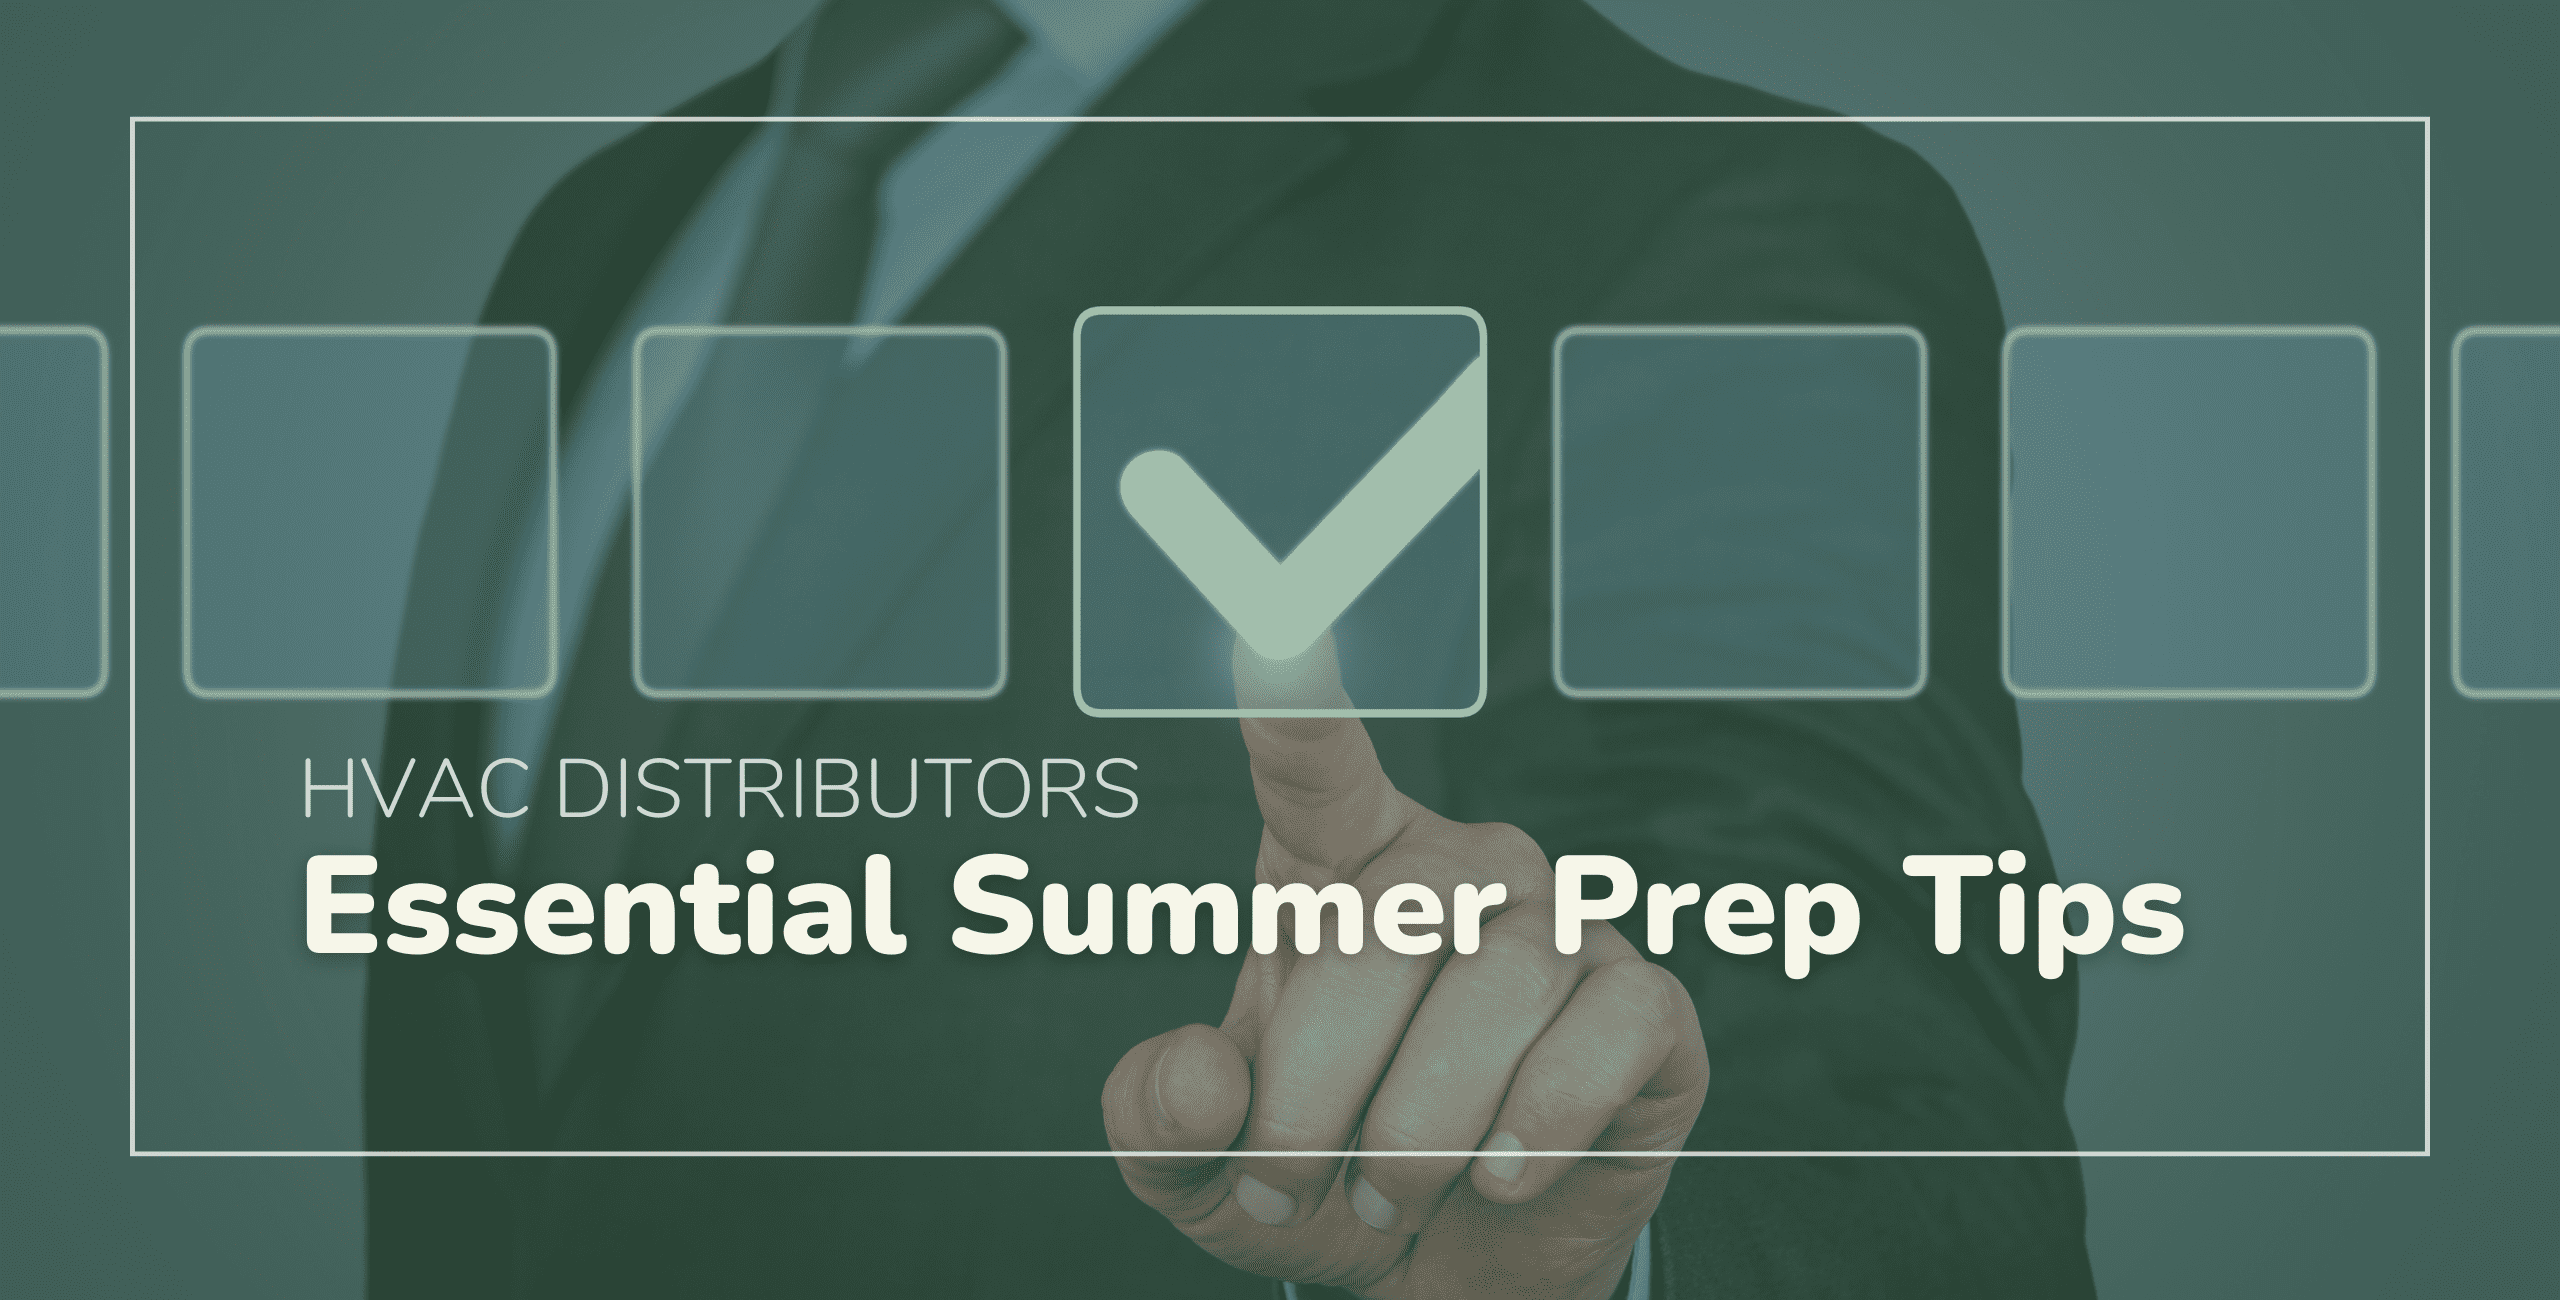 Essential Summer Prep Tips for HVAC Distributors